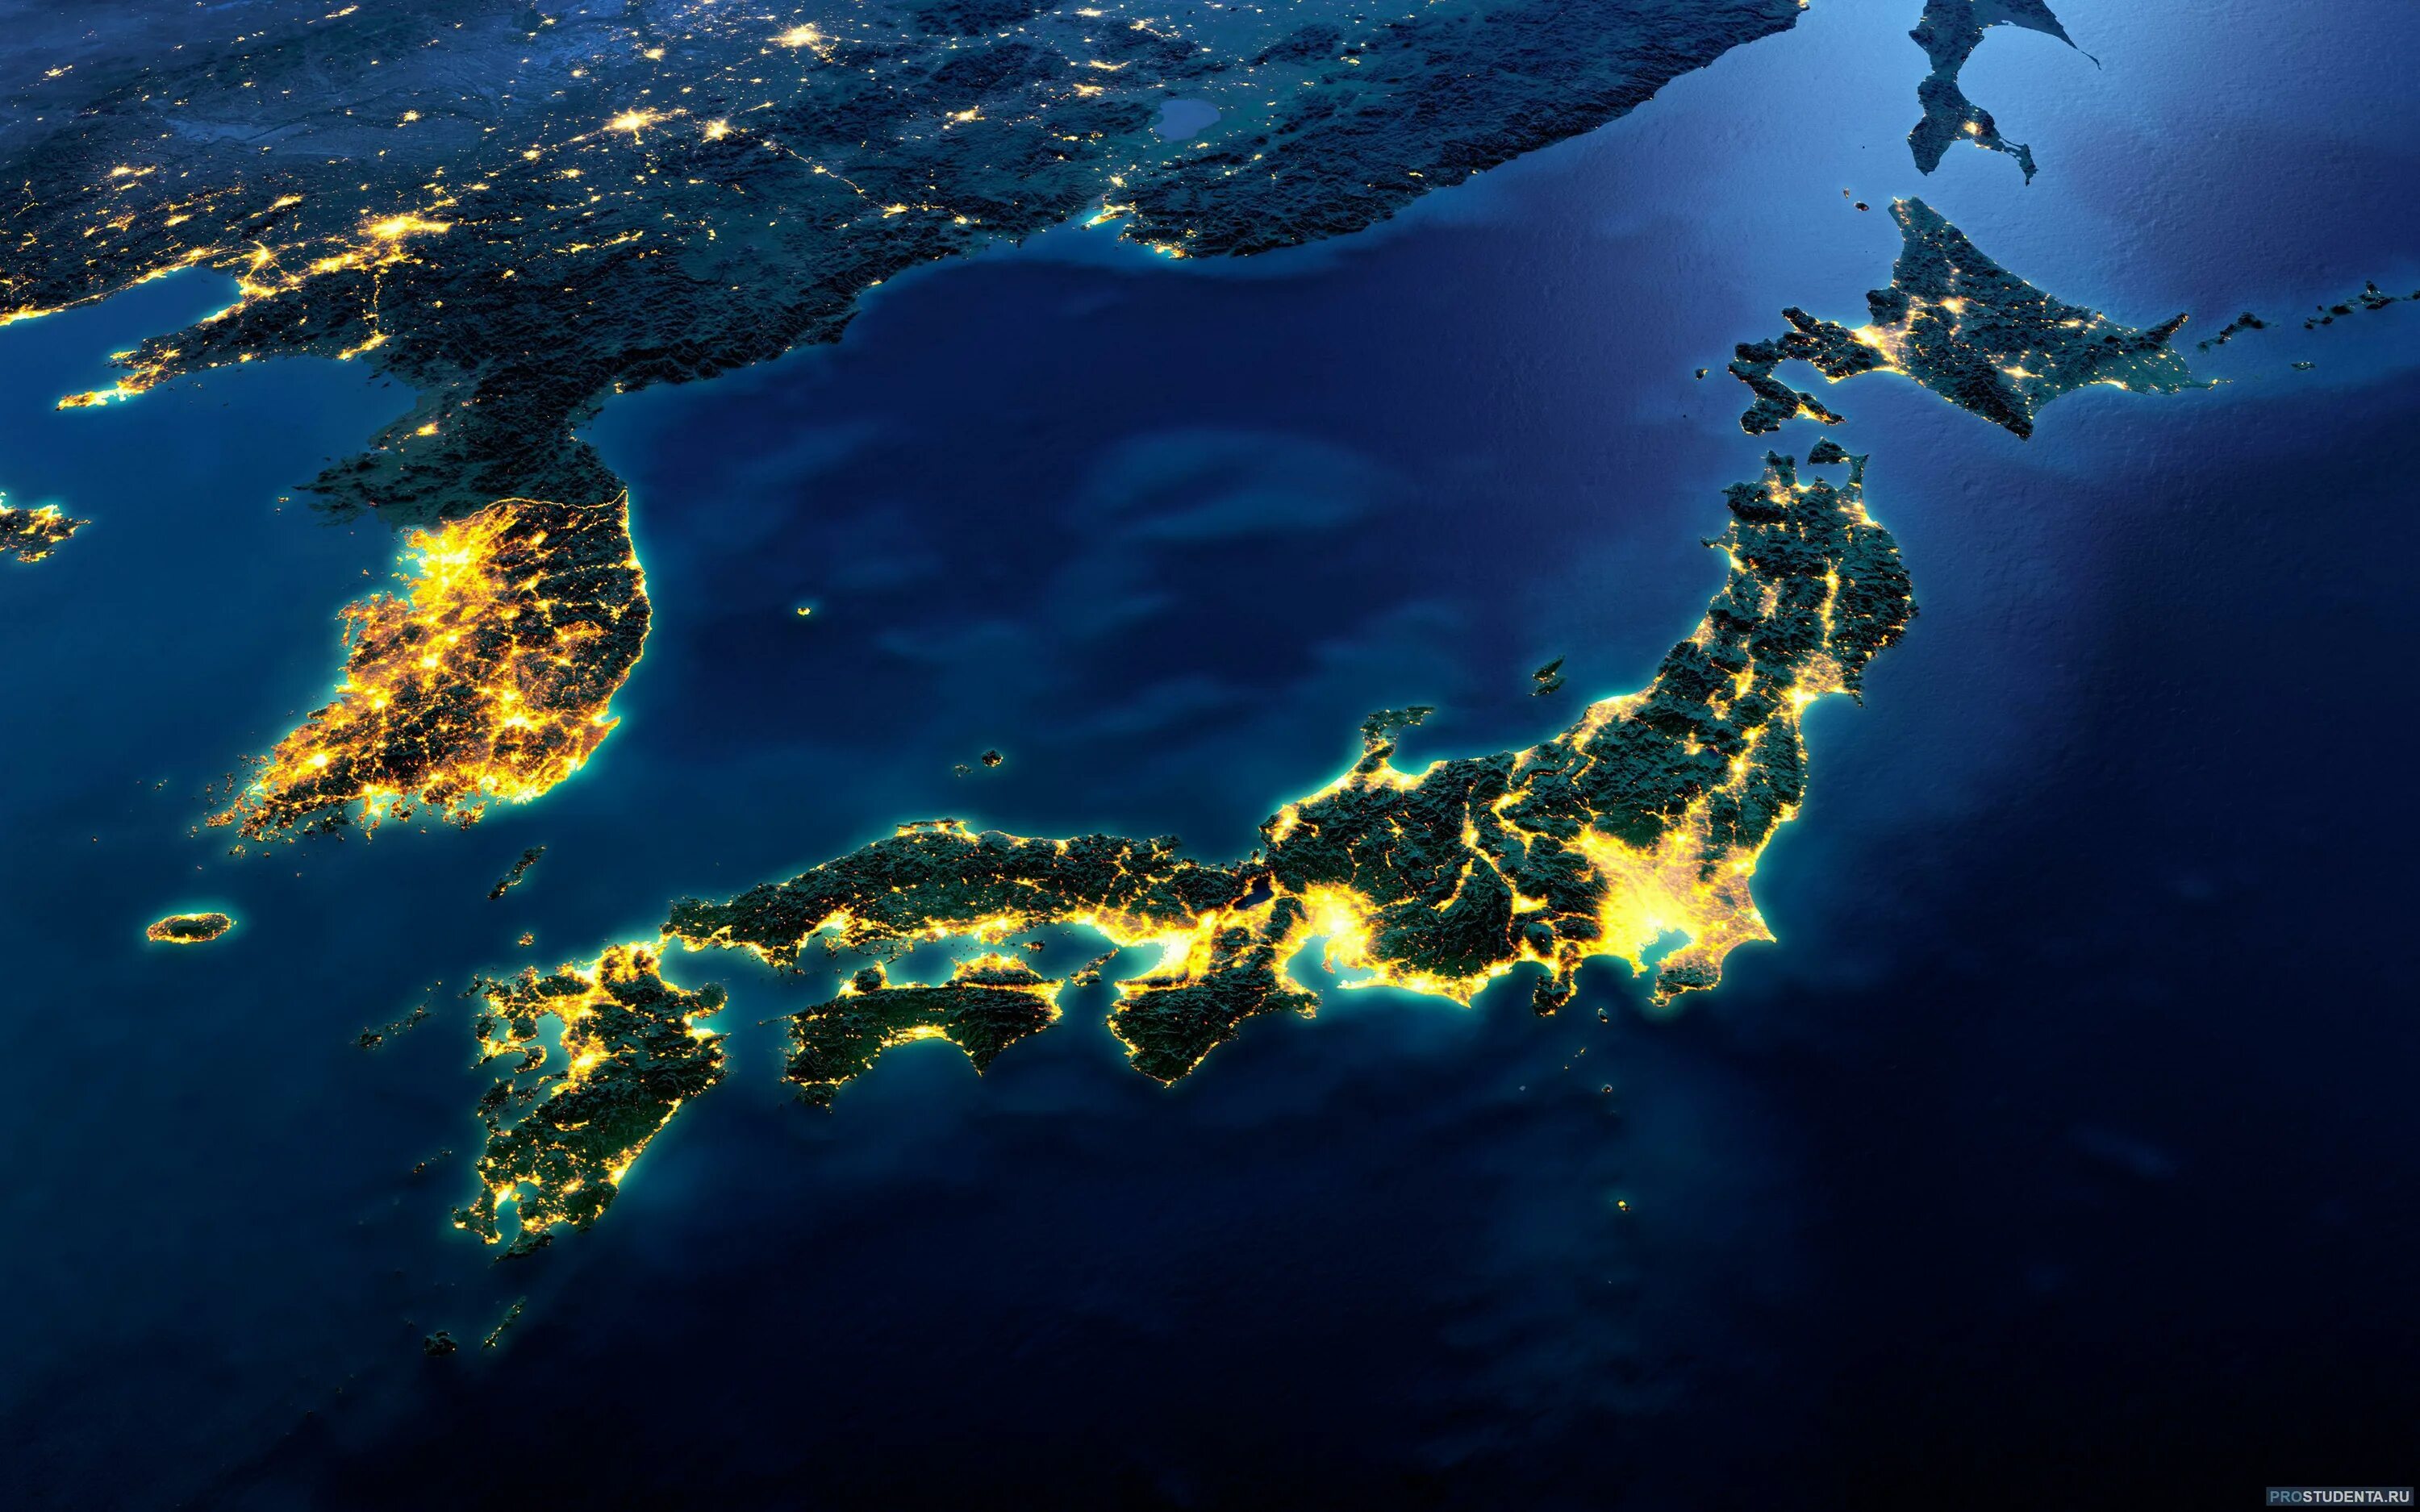 Страна состоящая из островов. Япония архипелаг. Хоккайдо Хонсю Сикоку Кюсю острова. Остров Калимантан космический снимок. Архипелаг Окинава.